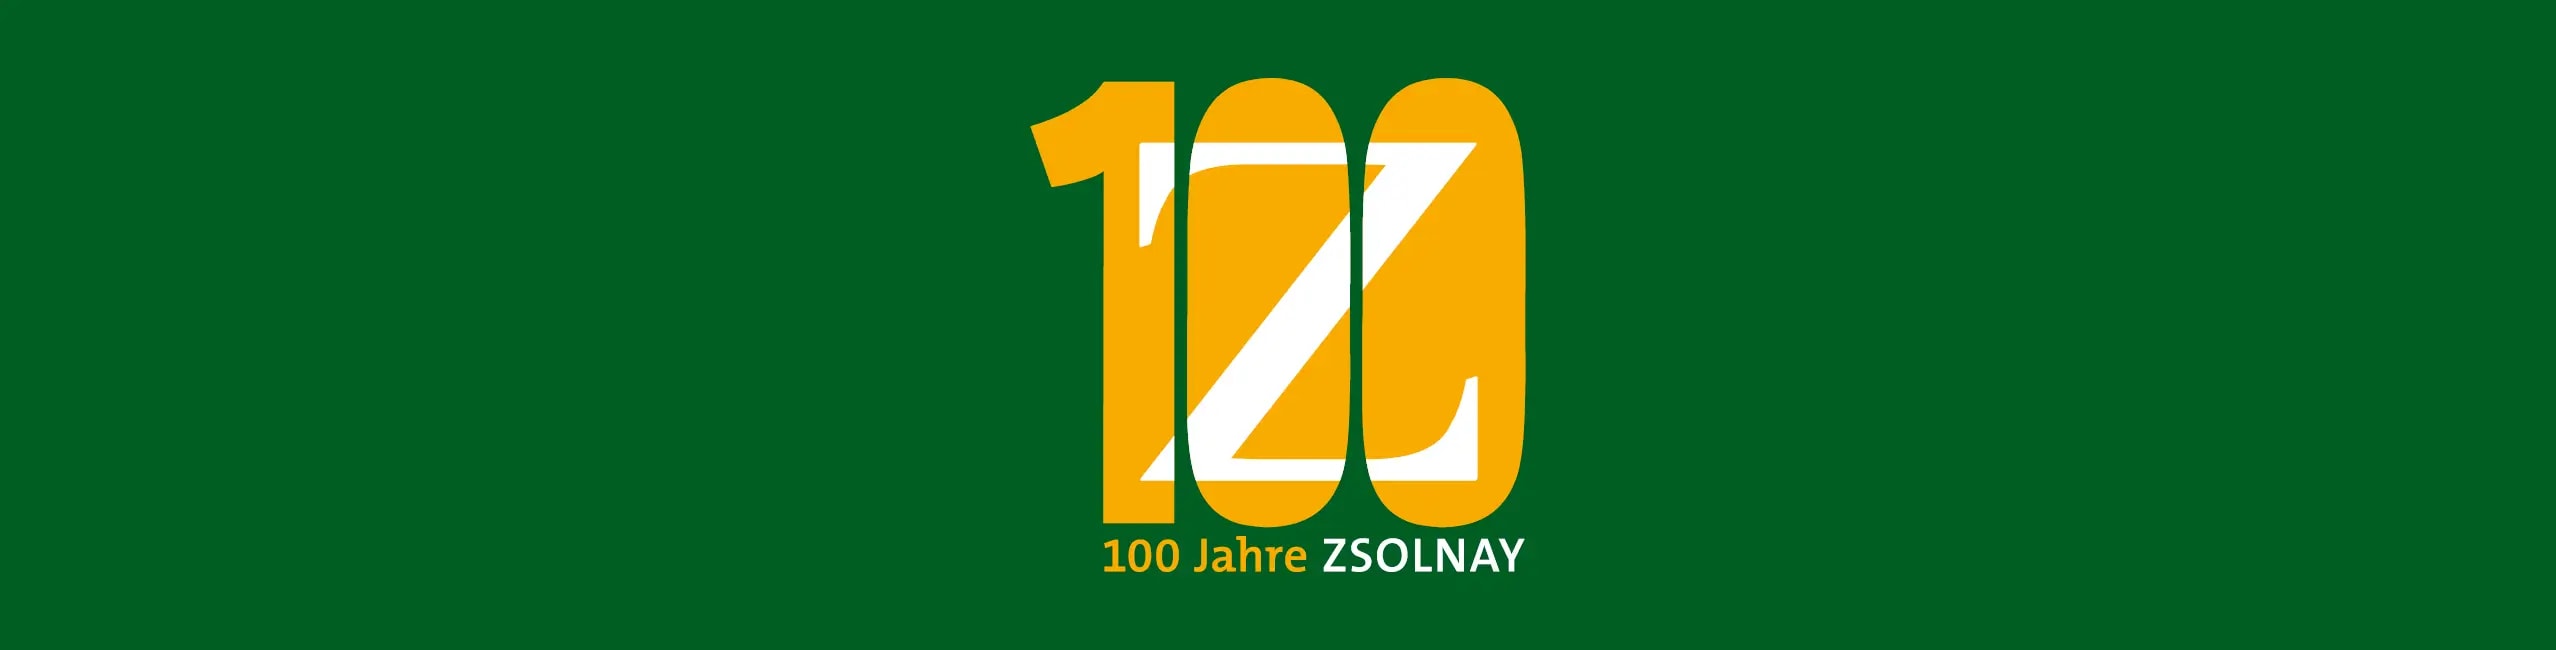 100 Jahre Zsolnay